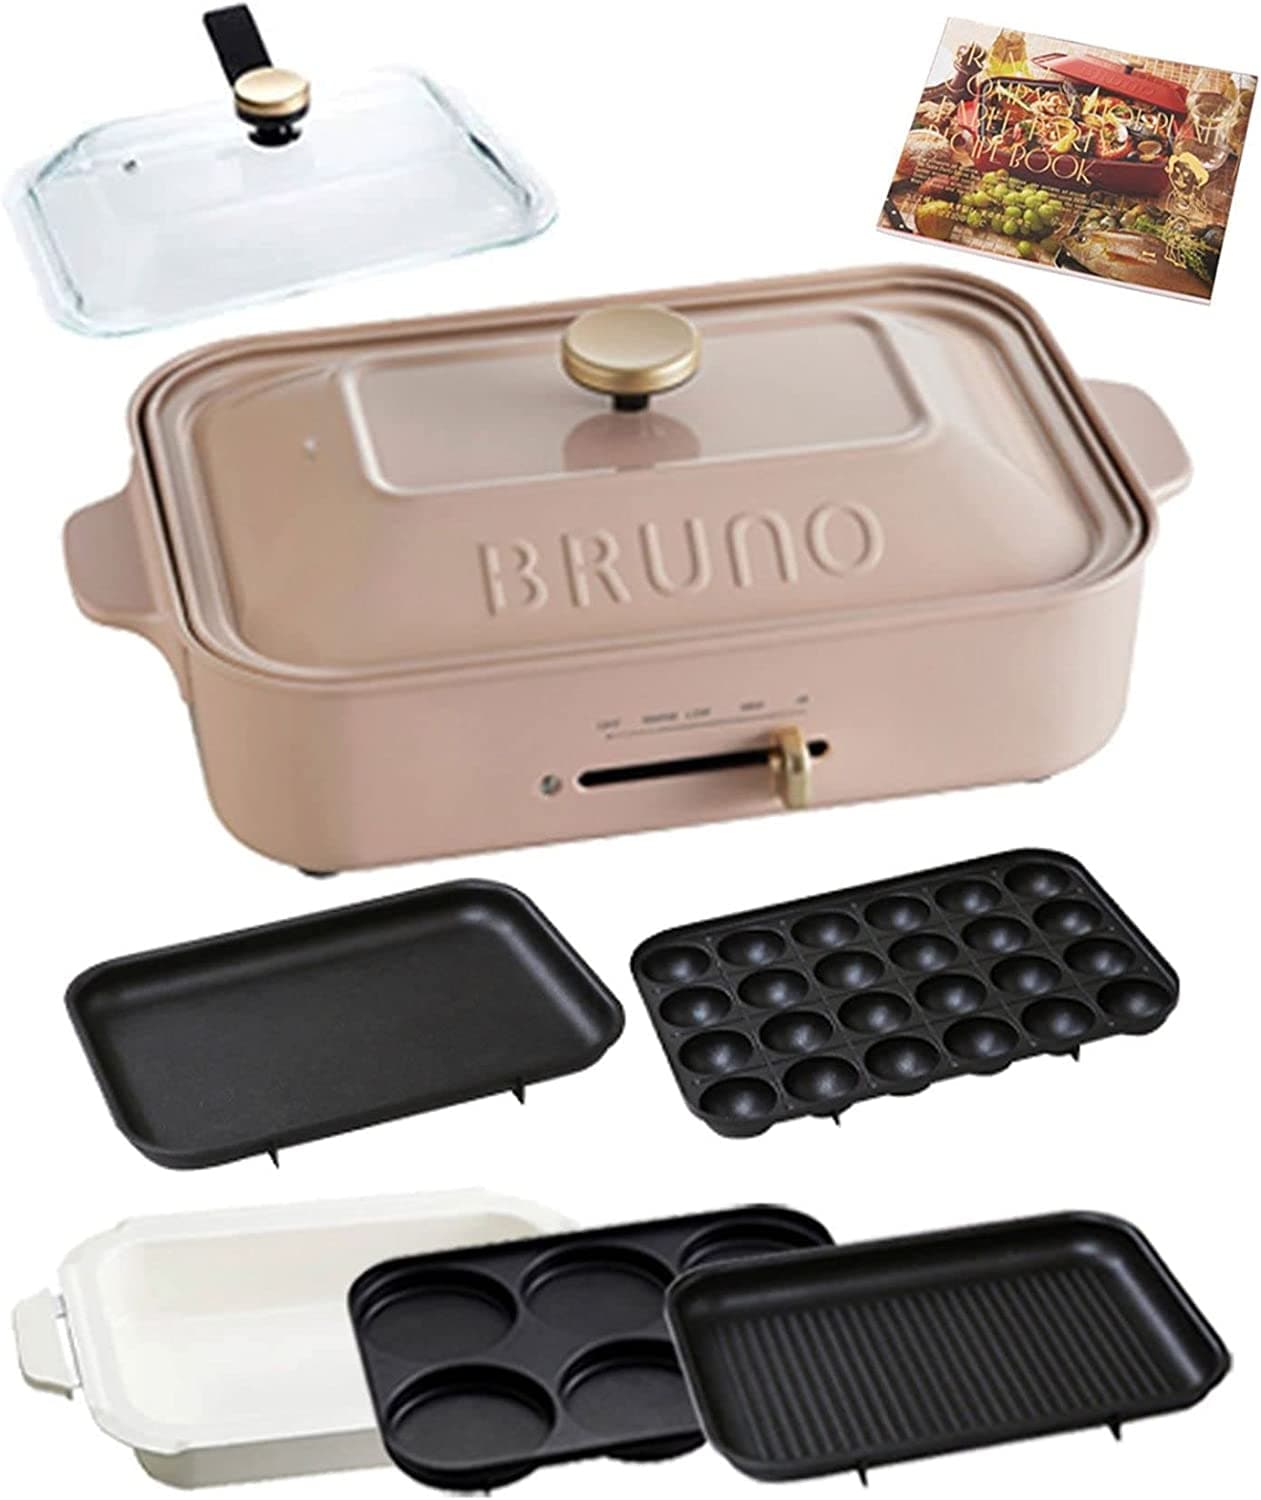 BRUNO ブルーノ ホットプレートグランデ グリル レシピセット 祝い 大型 焼肉 これ1台 ふた付き 温度調節 洗いやすい 大人数 